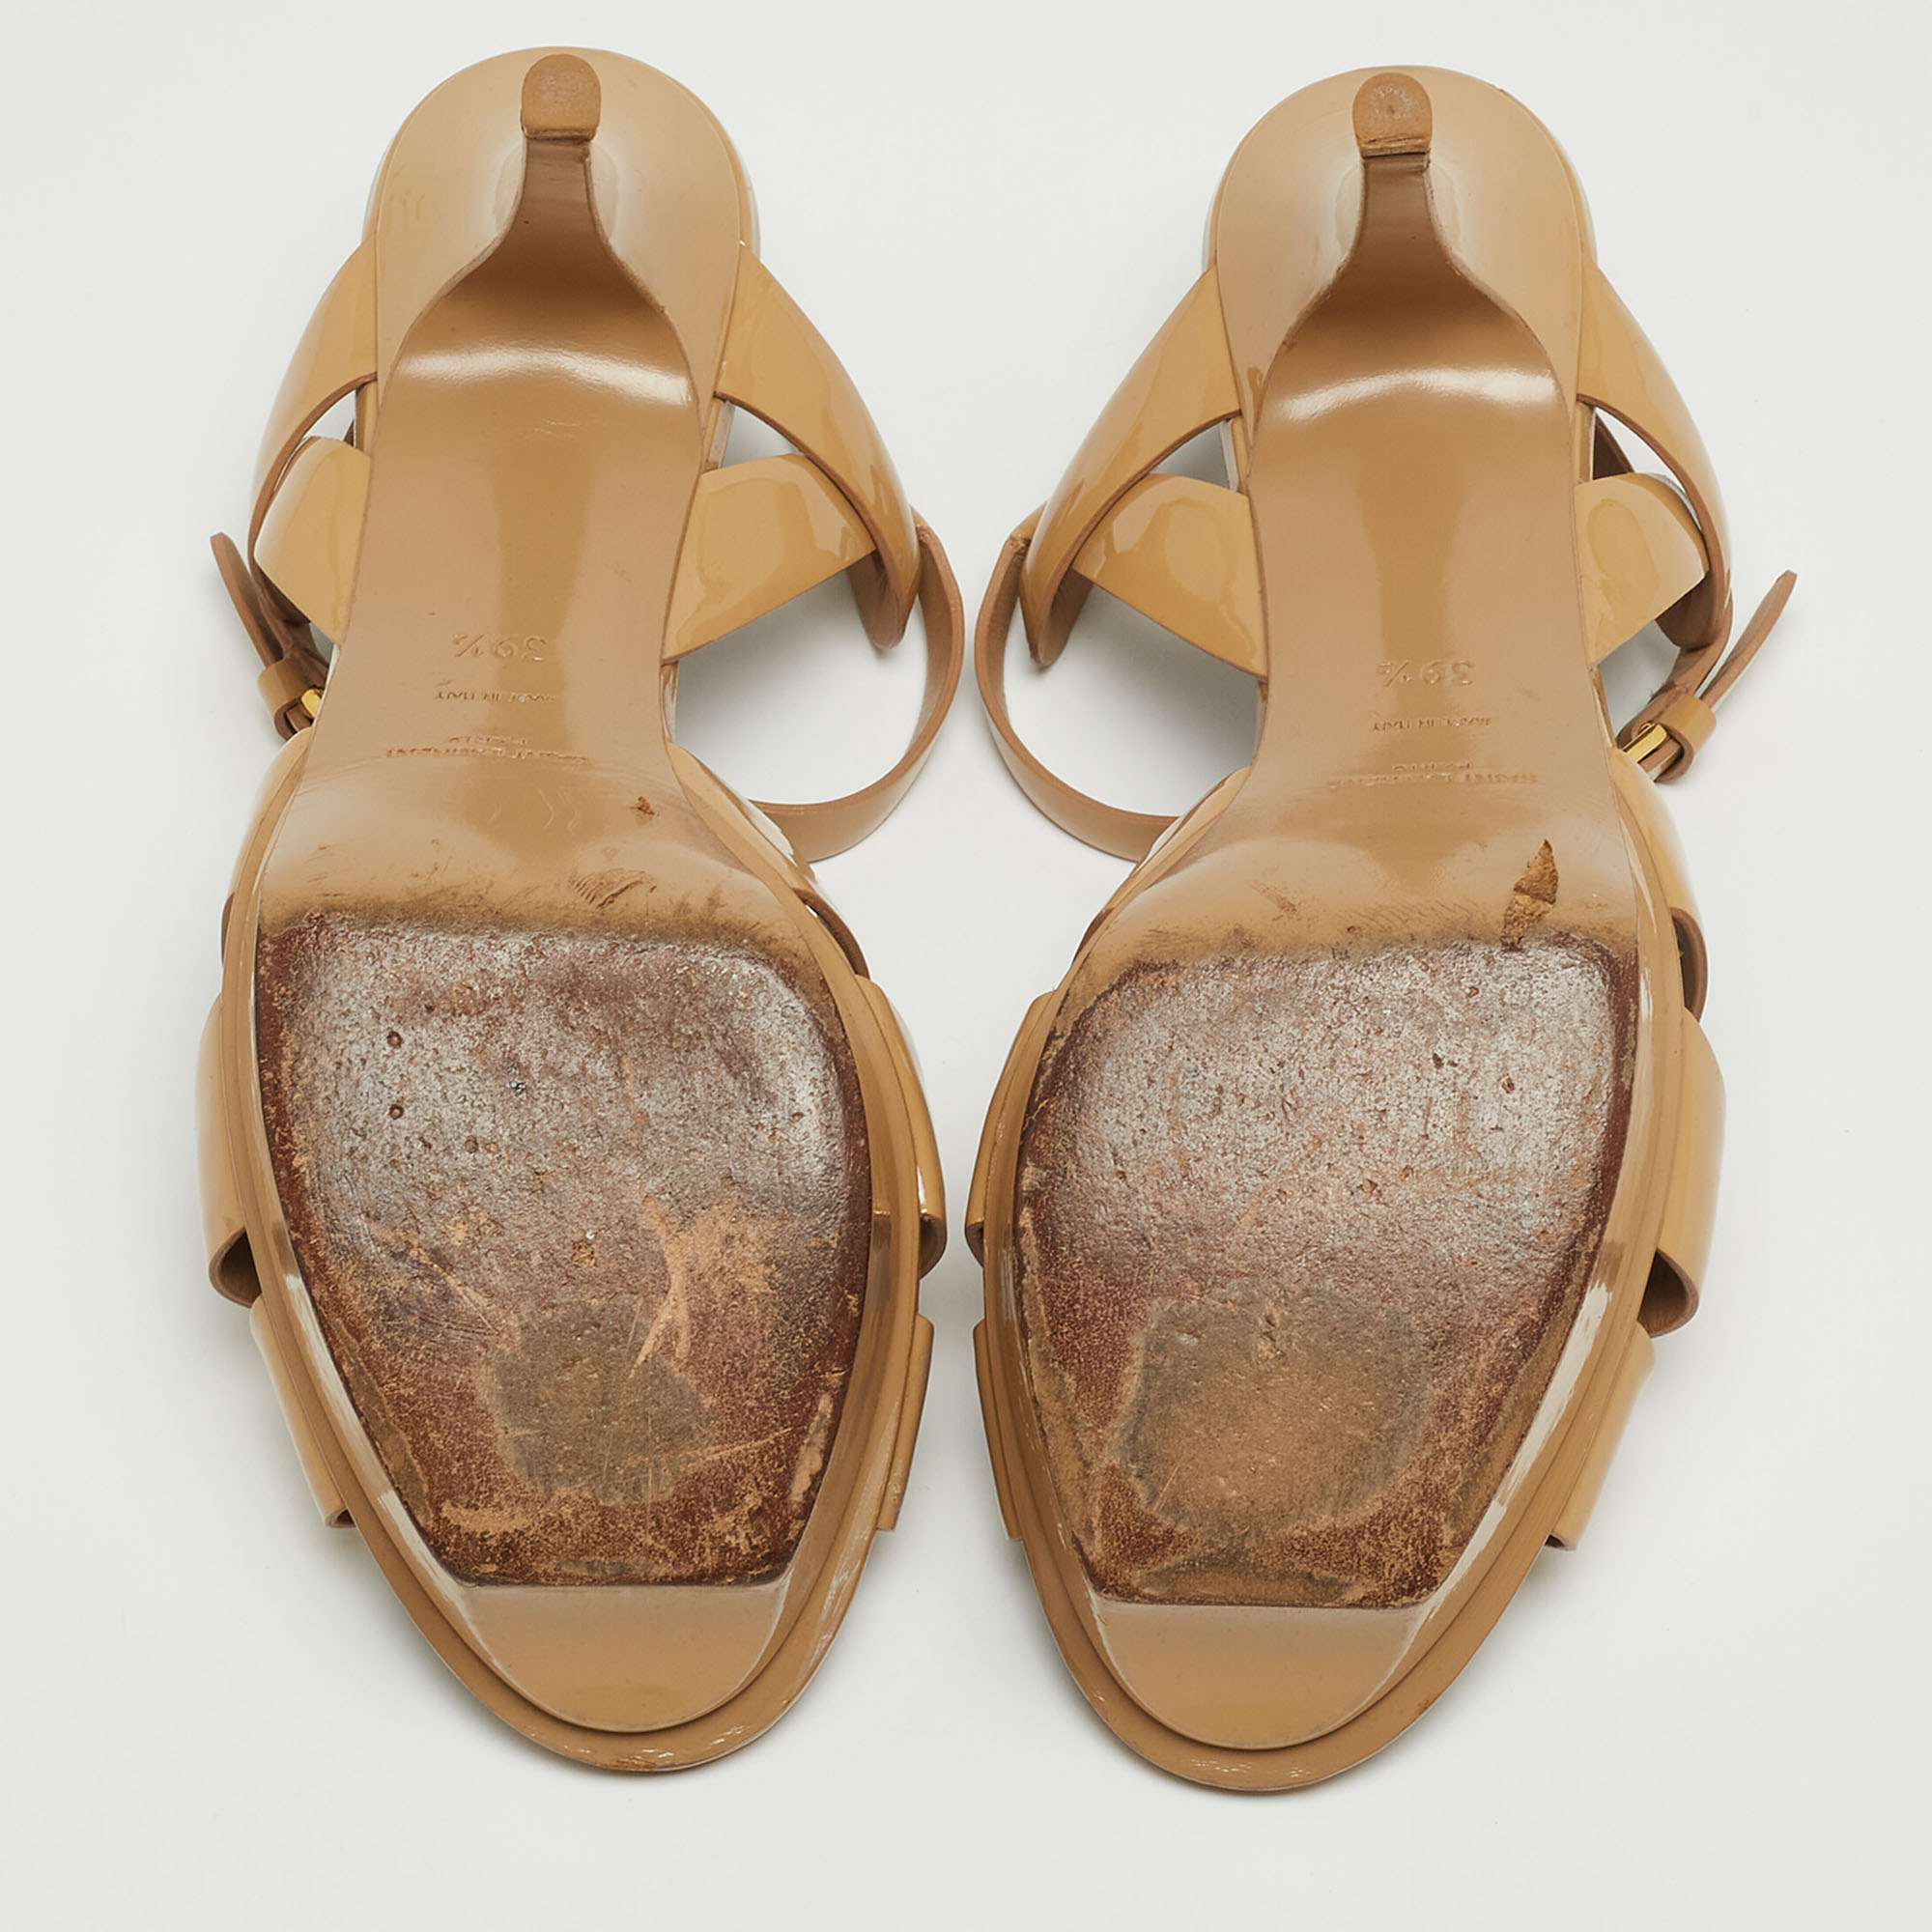 Saint Laurent Beige Patent Leather Tribute Sandals Size 39.5